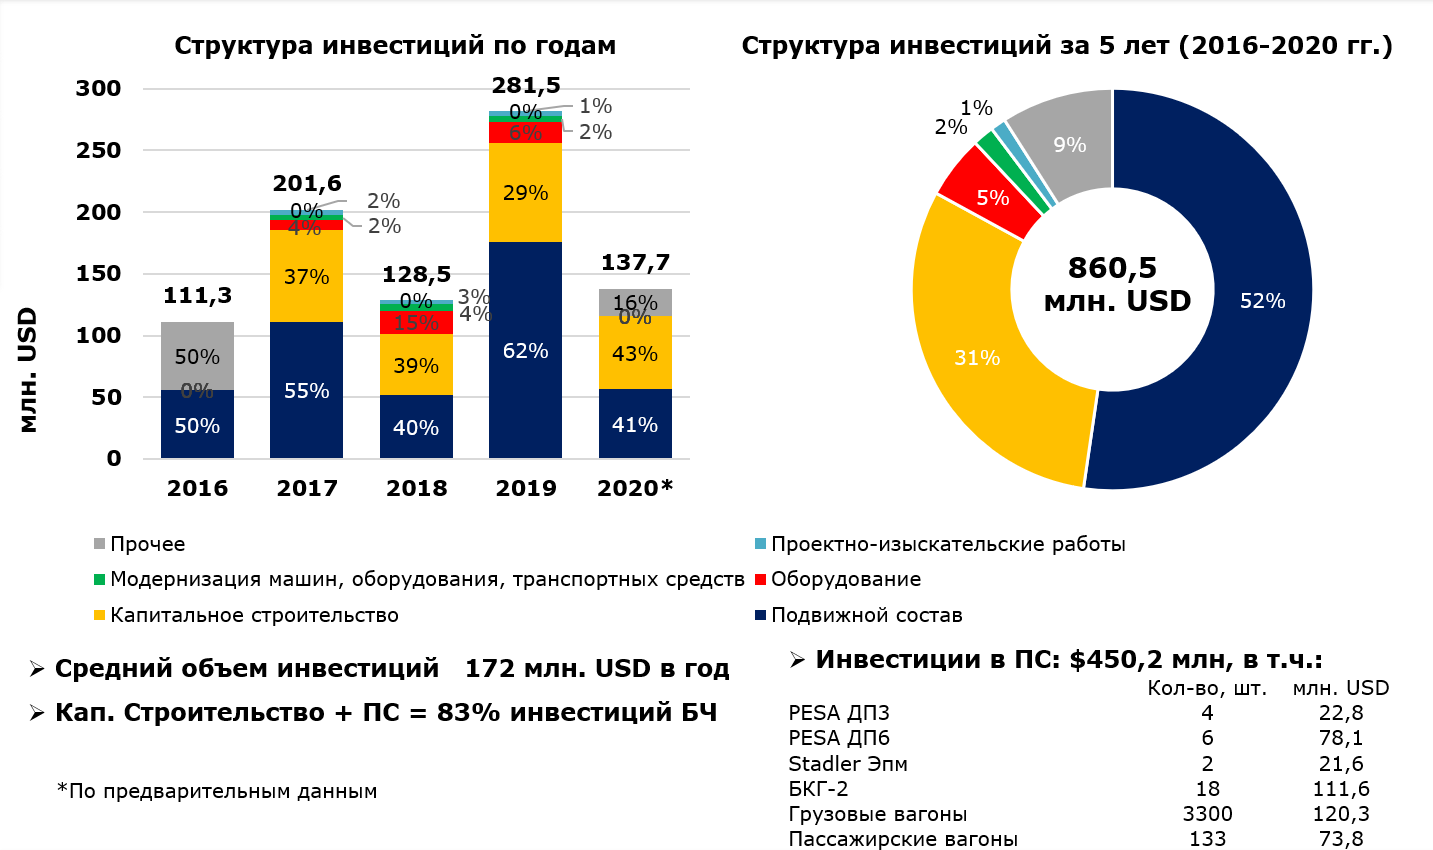 Структура инвестиций БЖД в 2016-2020 г.